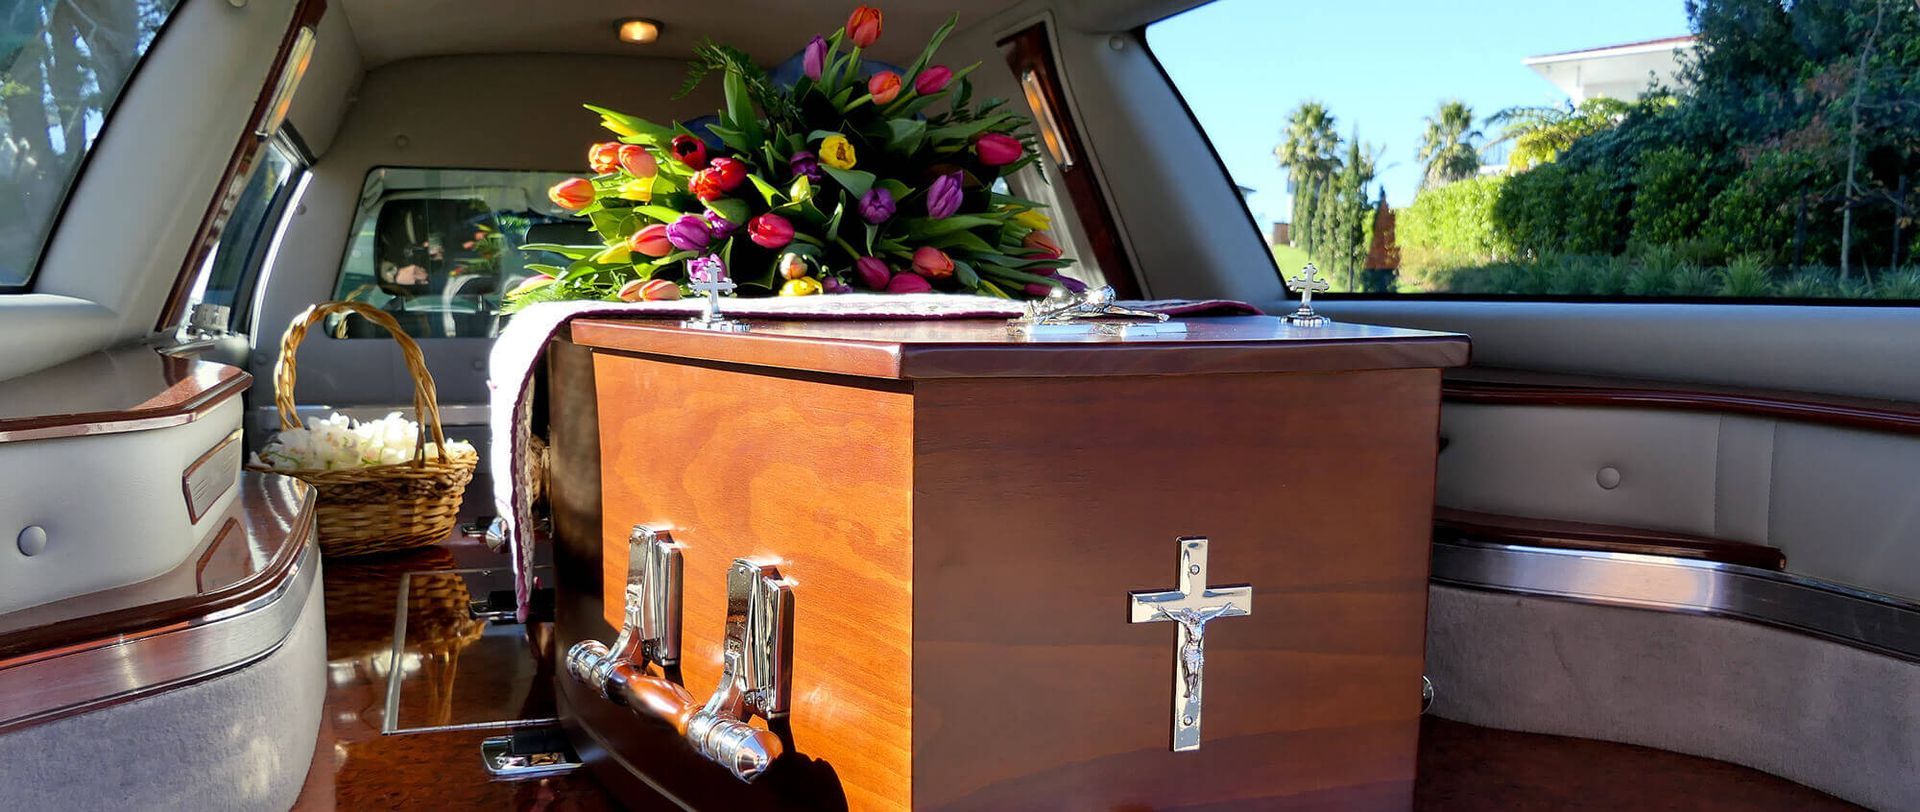 Cercueil dans un véhicule